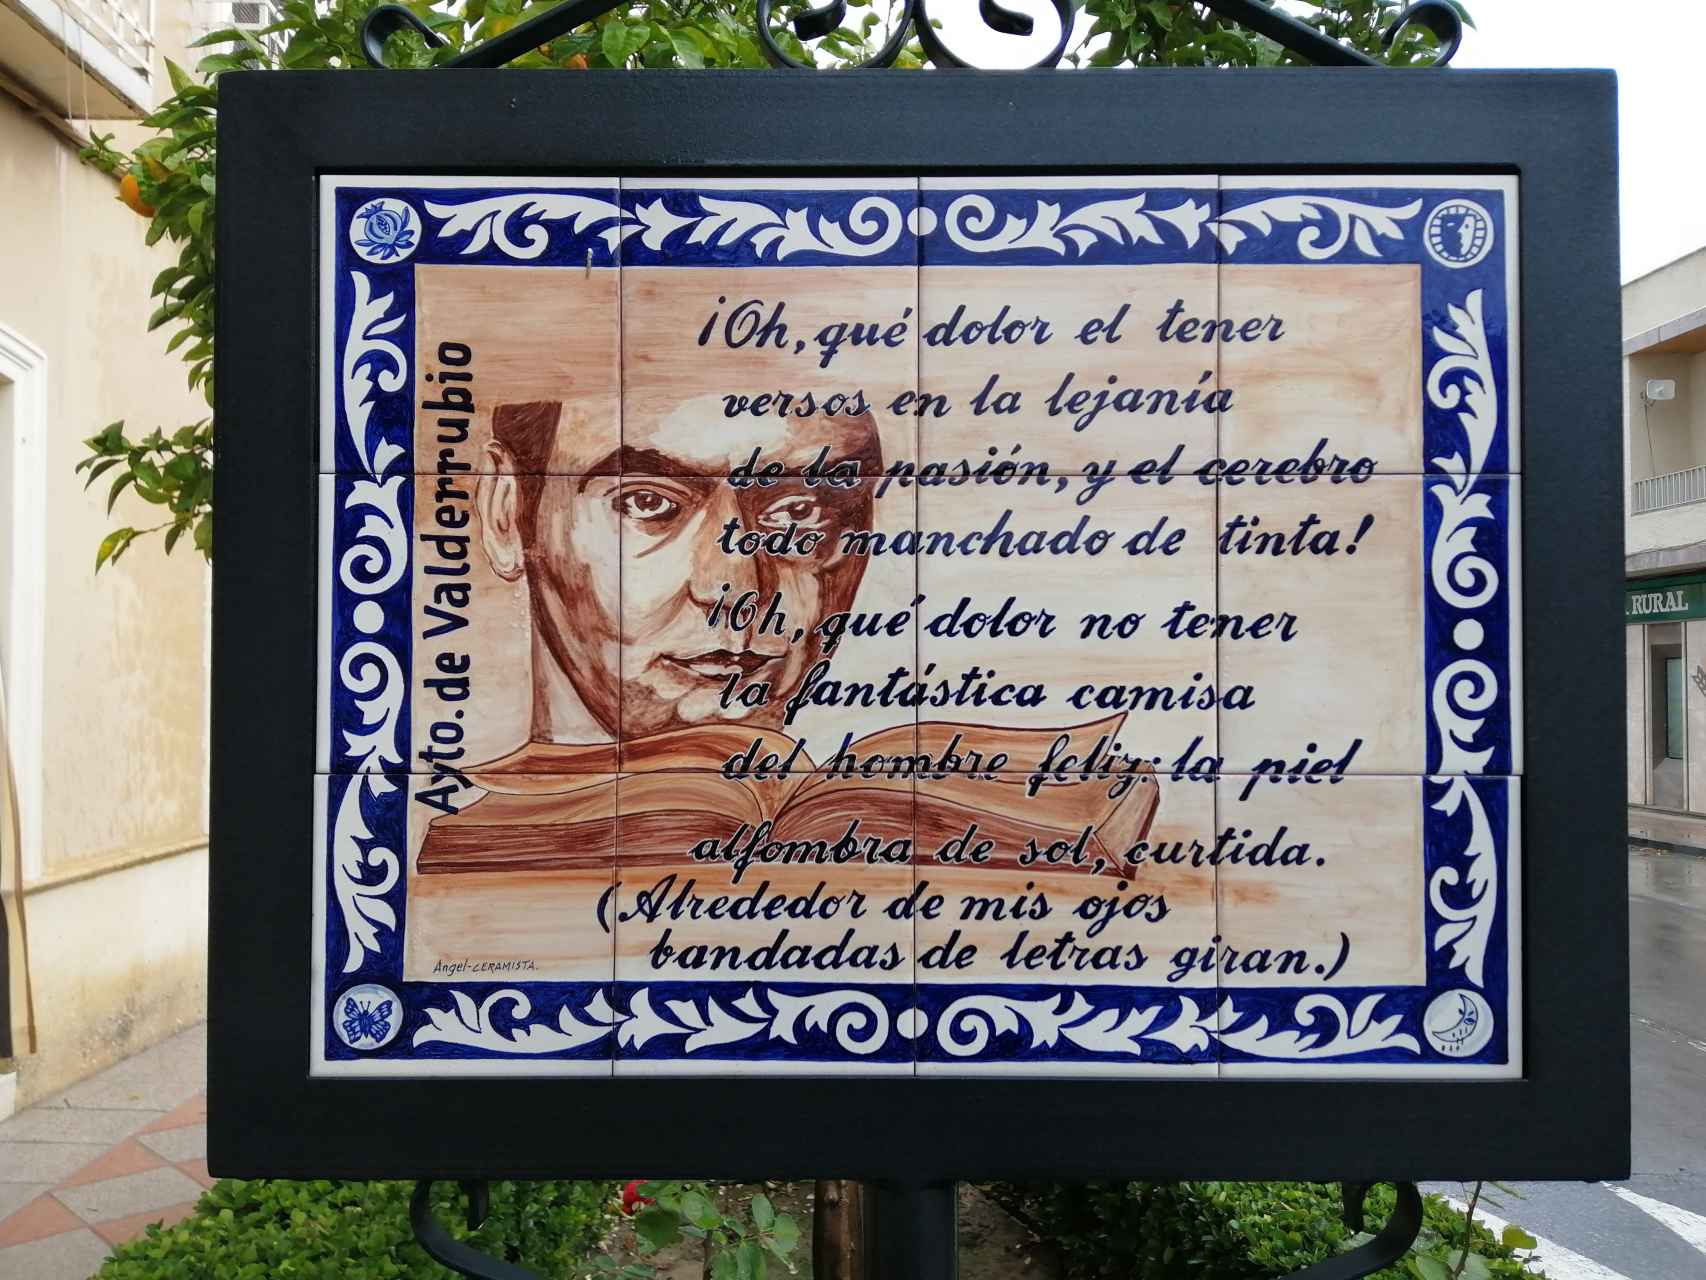 El Ayuntamiento de Valderrubio tiene encuadradas en la ciudad marquesinas con poemas de Lorca.